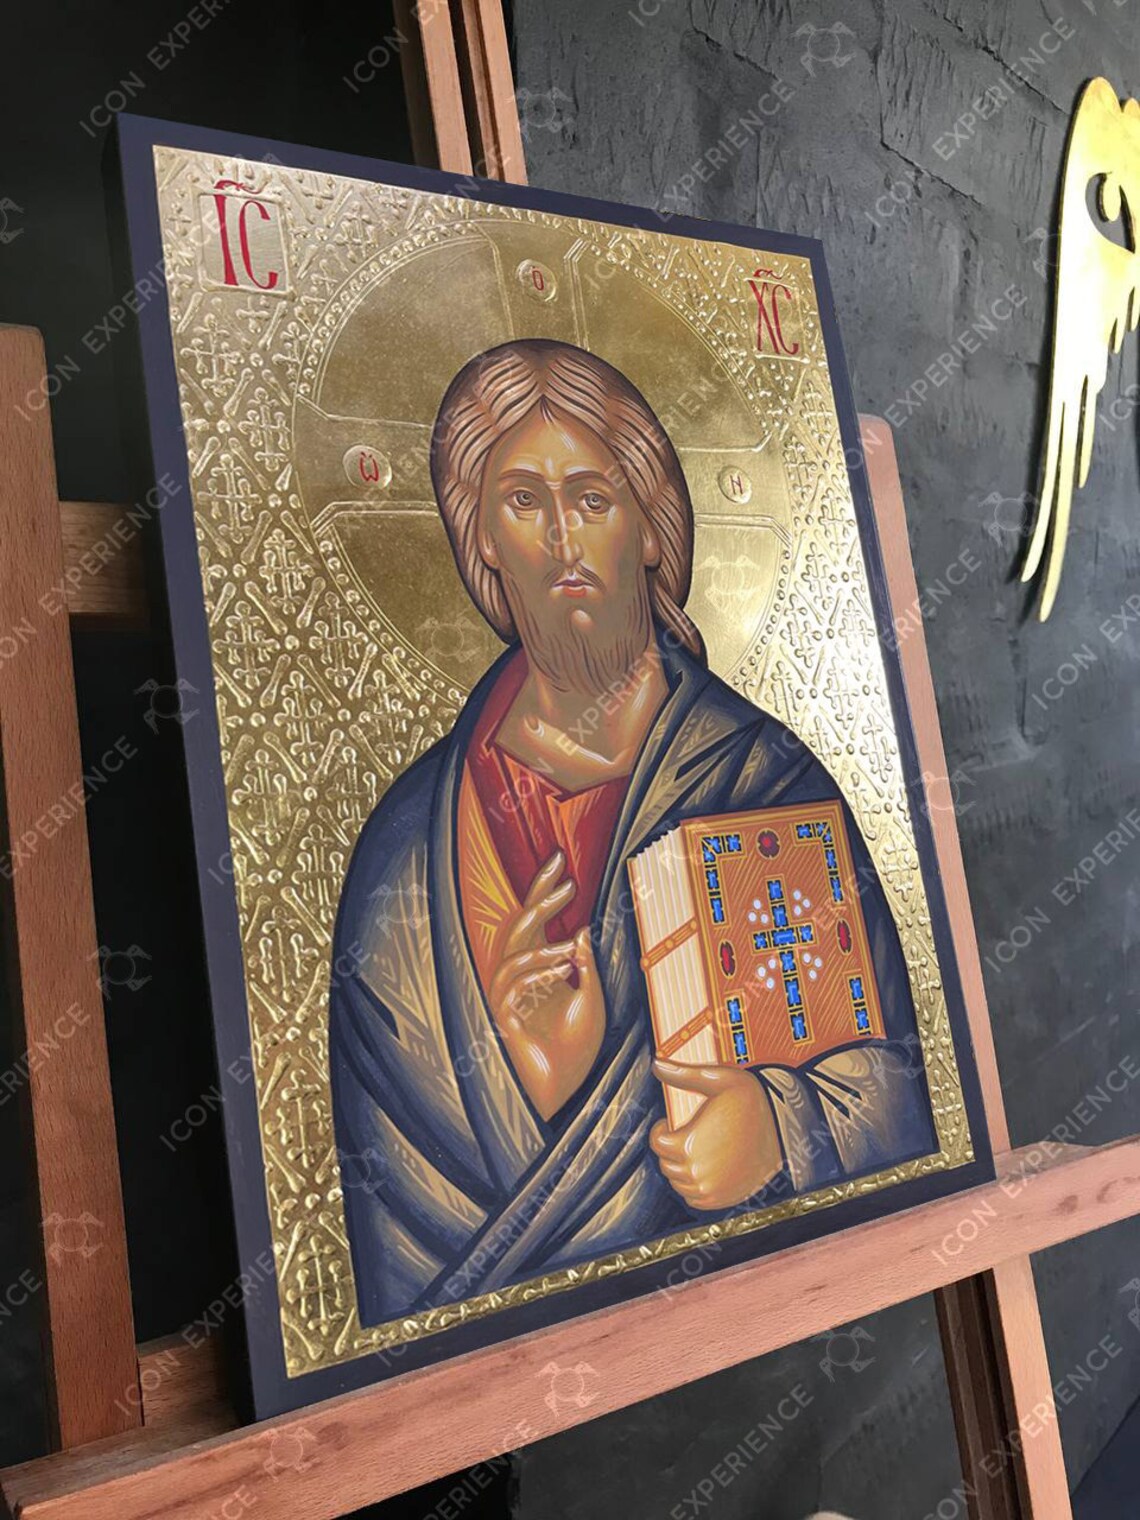 Jesus Christ Pantocrator of Sinai Monastery